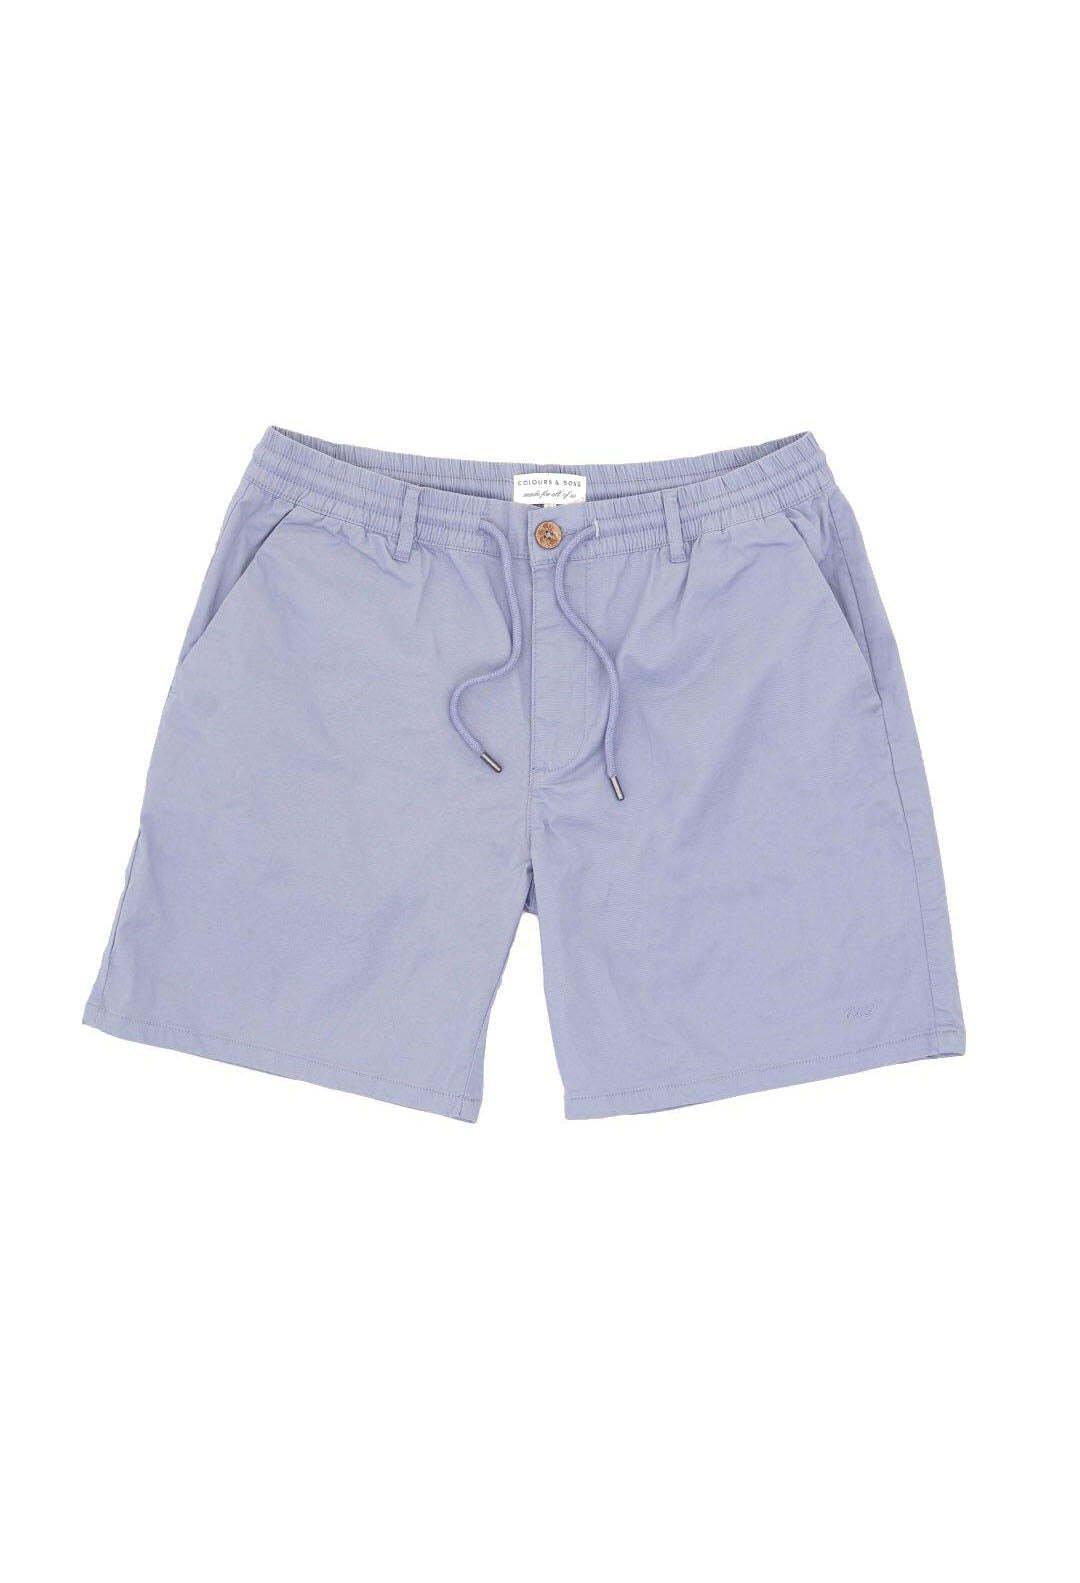 Shorts Shorts Light Twill Herren Blau XL von Colours & Sons